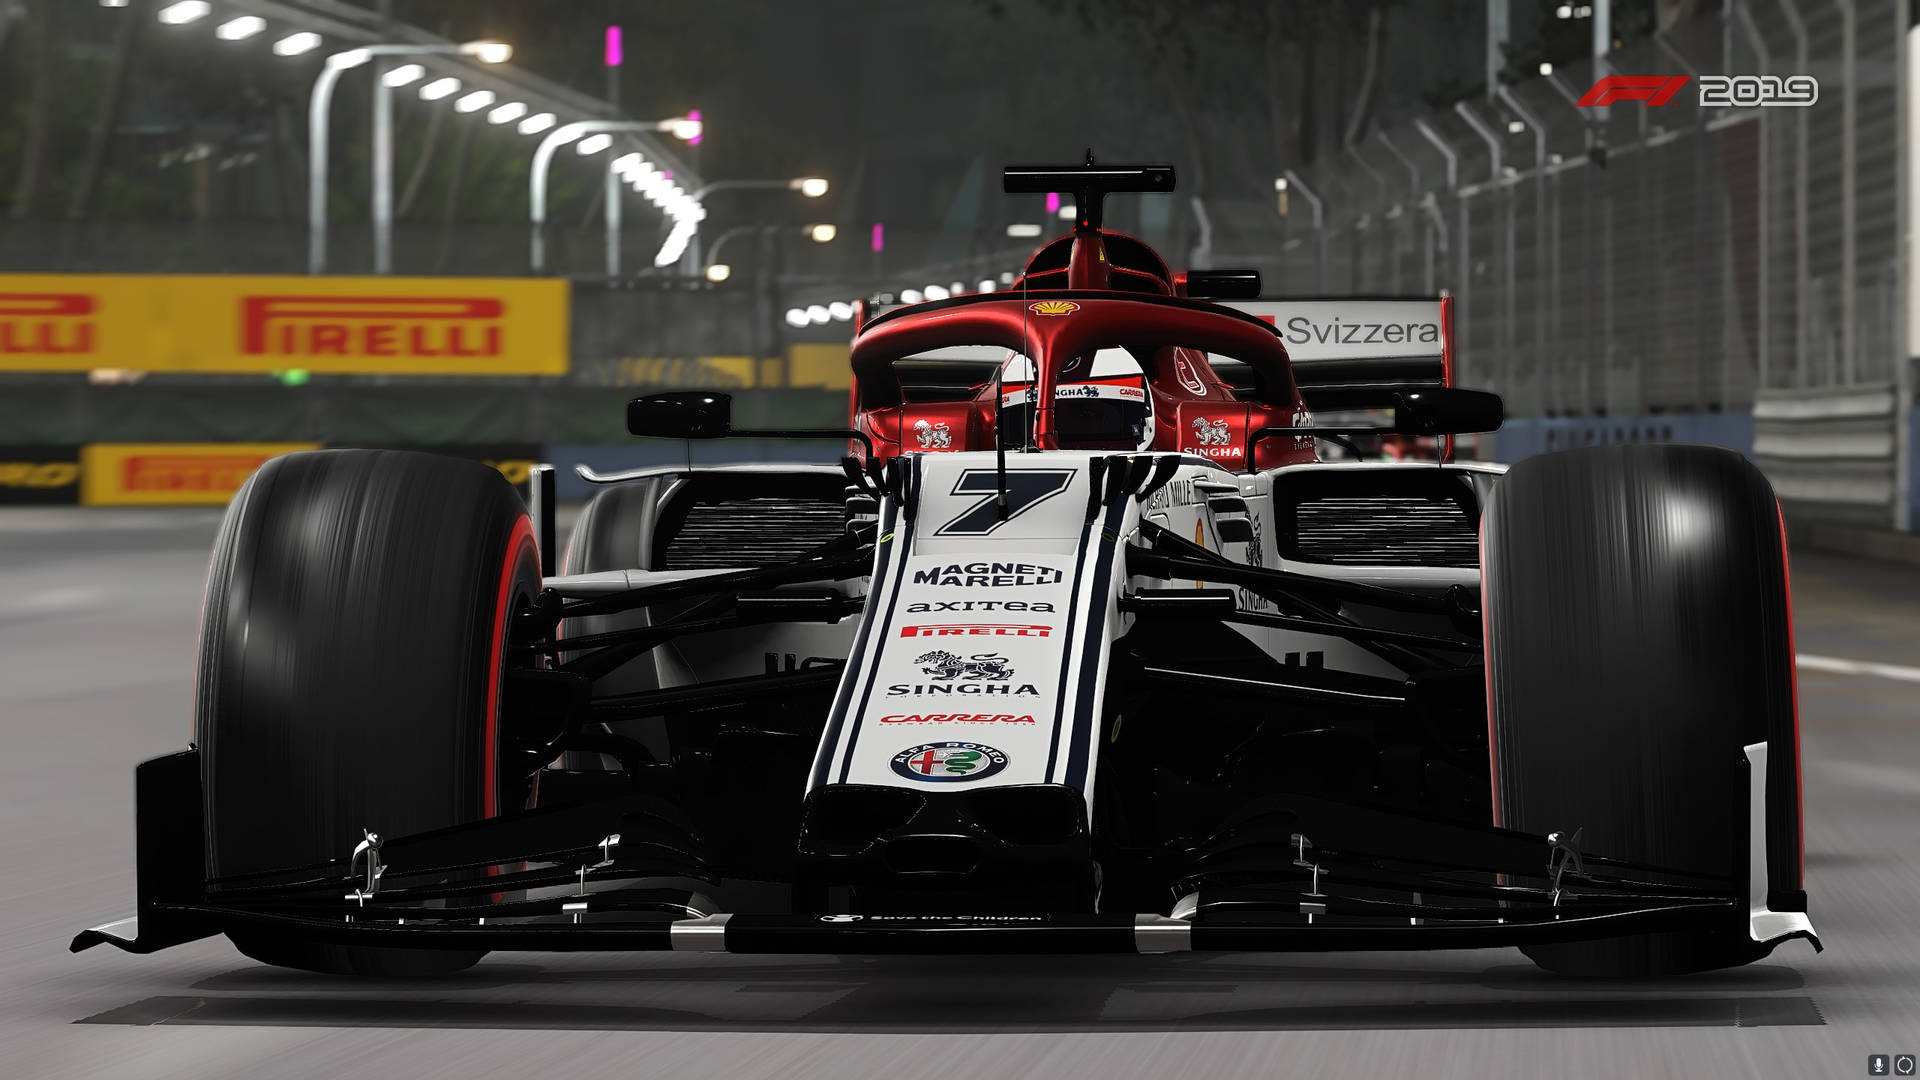 Raikkonen's Car In F1 2019 Background